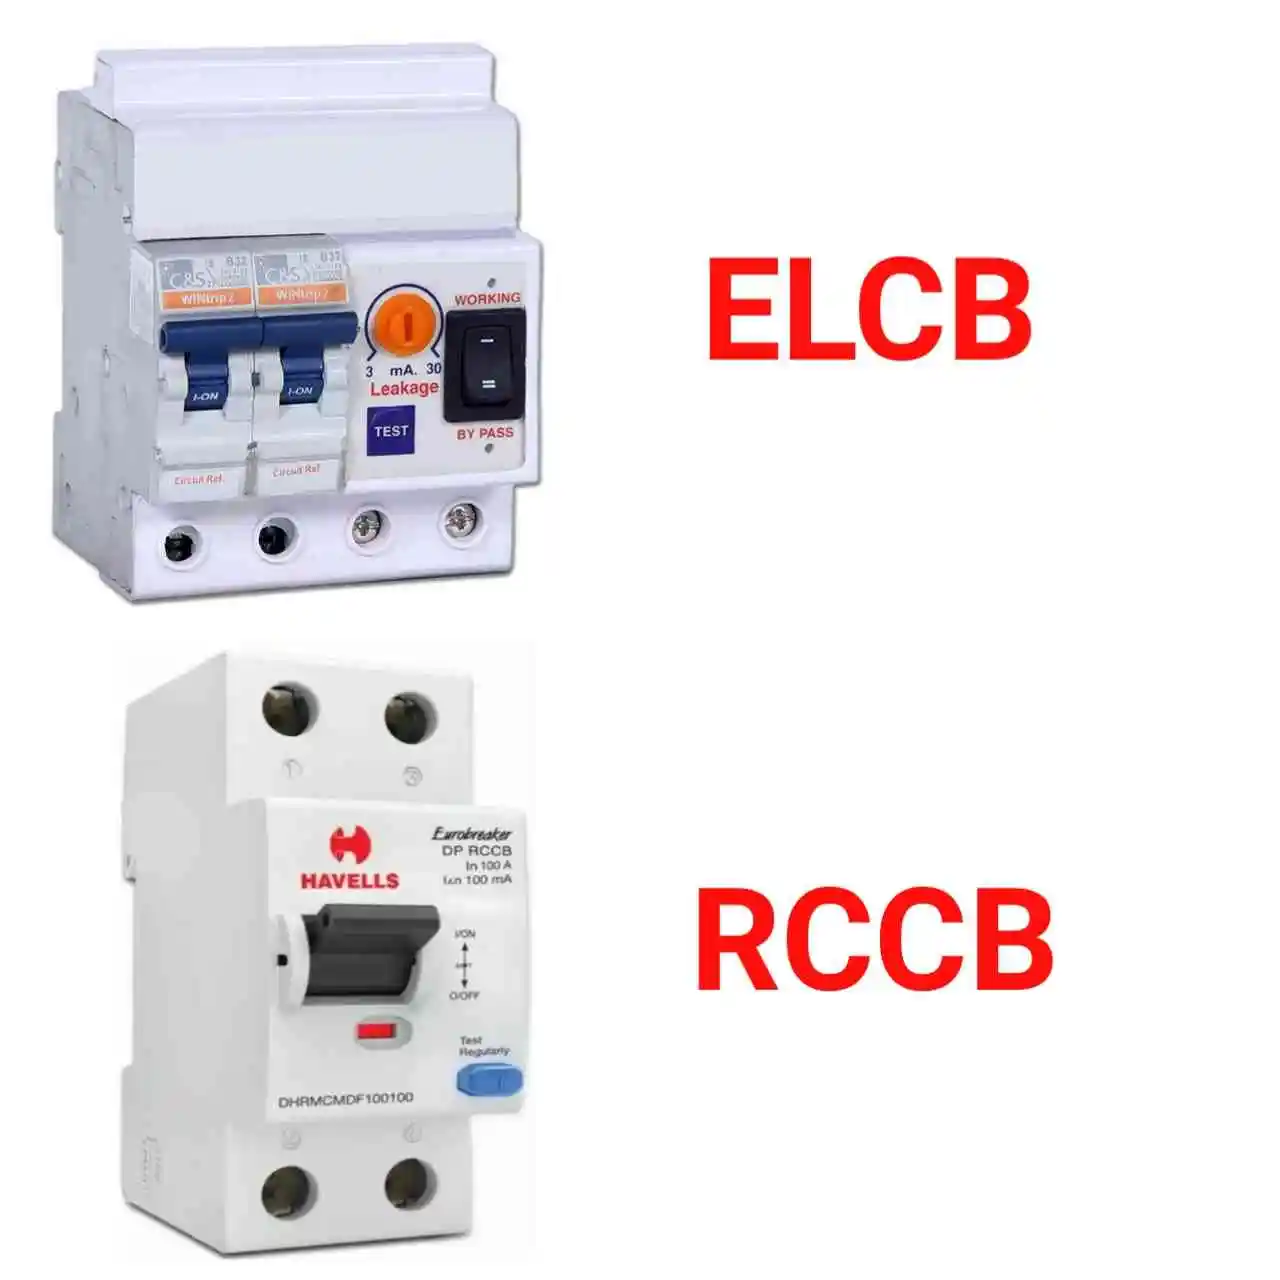 Elcb और Rccb में क्या अंतर है?